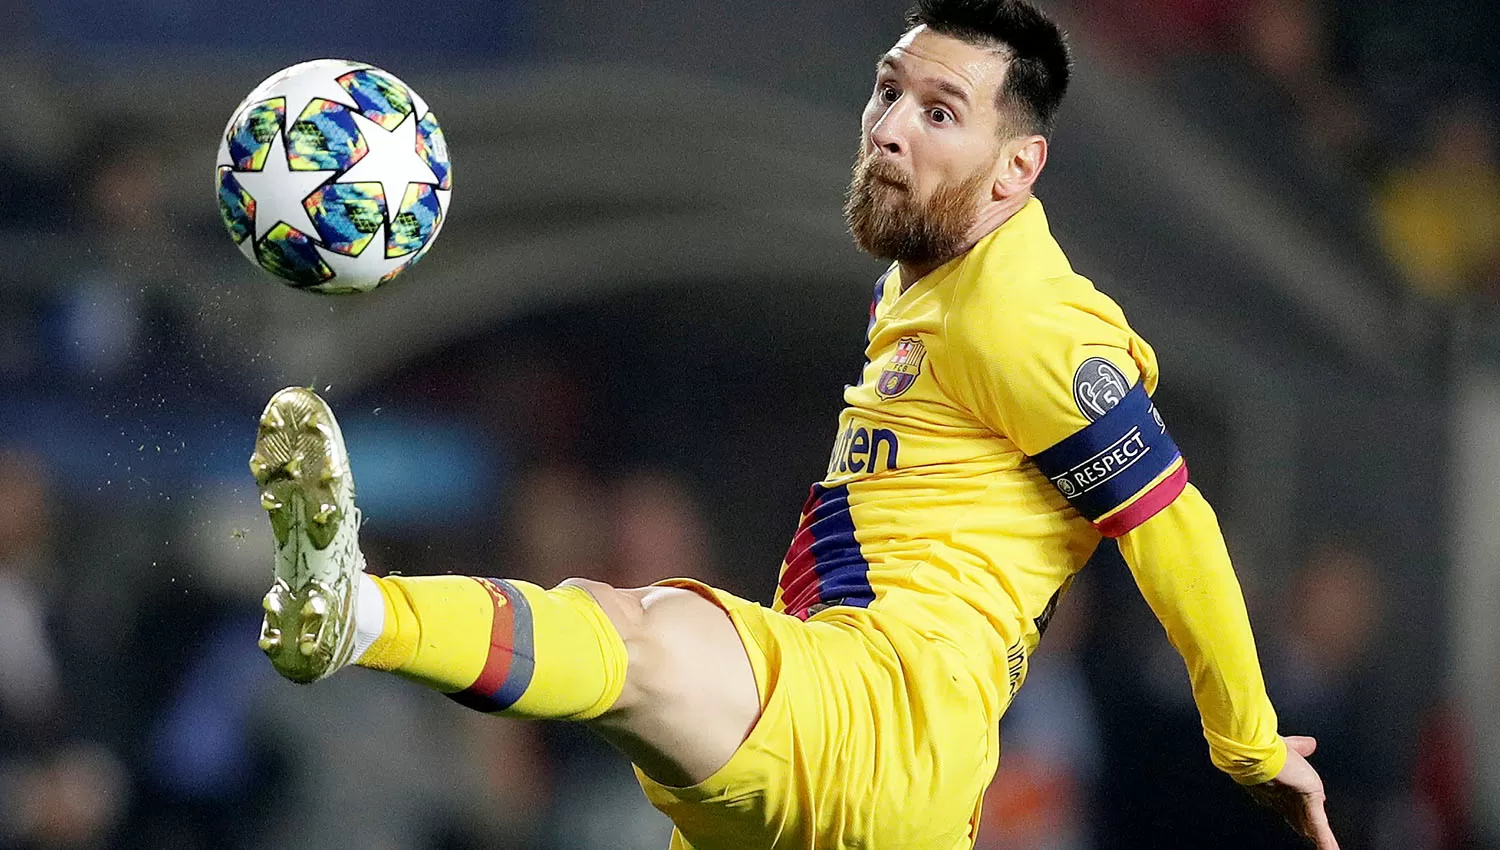 Sólo a siete equipos a los que ha enfrentado en la Champions, Messi no pudo convertirles. (Reuters)